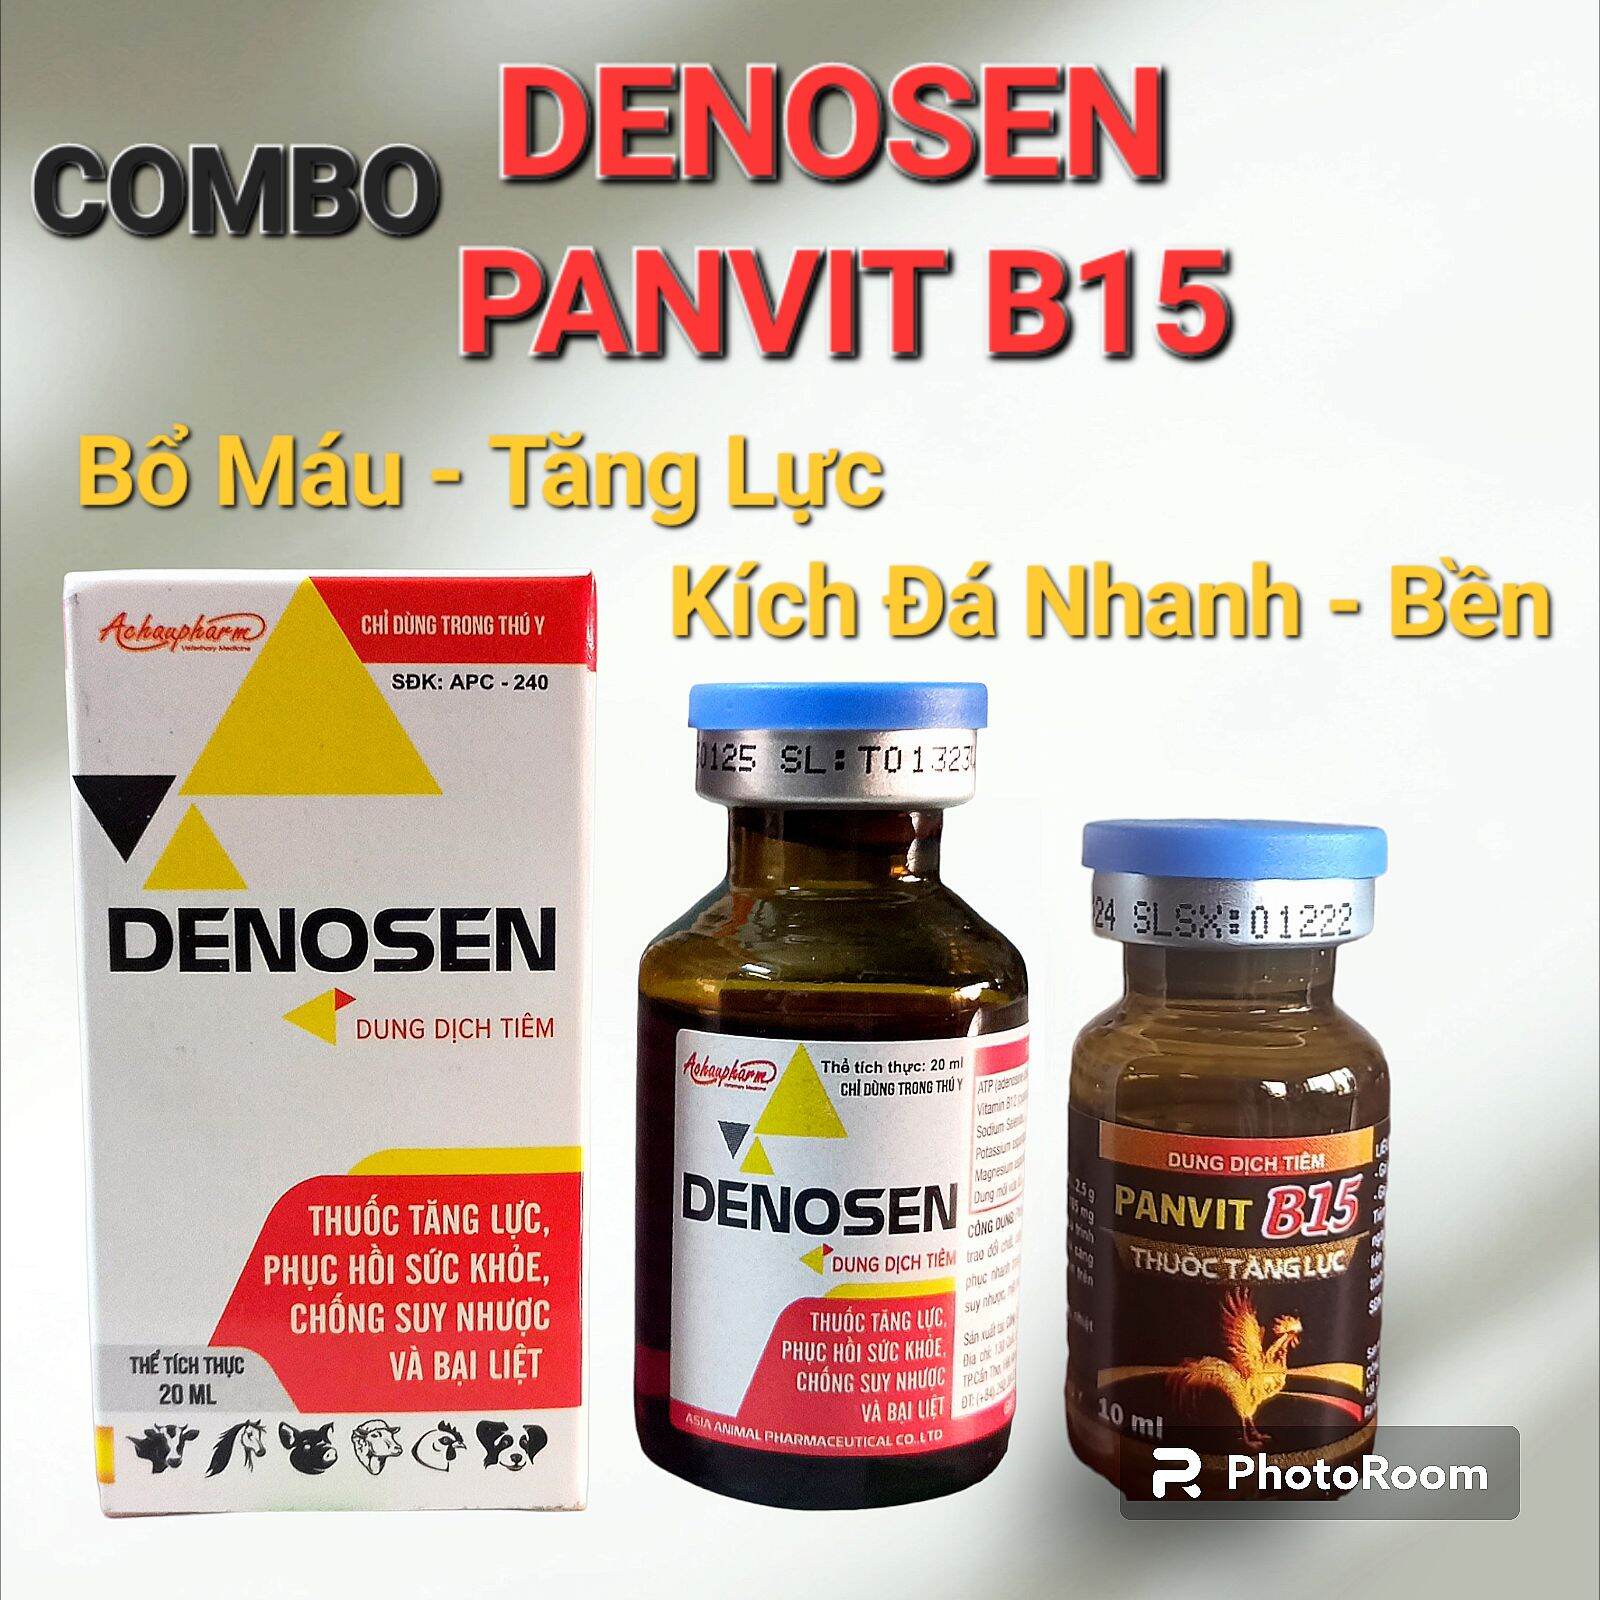 Combo Panvit B15 + Denosen Lọ Nhỏ Tăng Lực, Tăng Cơ, Bổ Máu Cho Gà Chọi